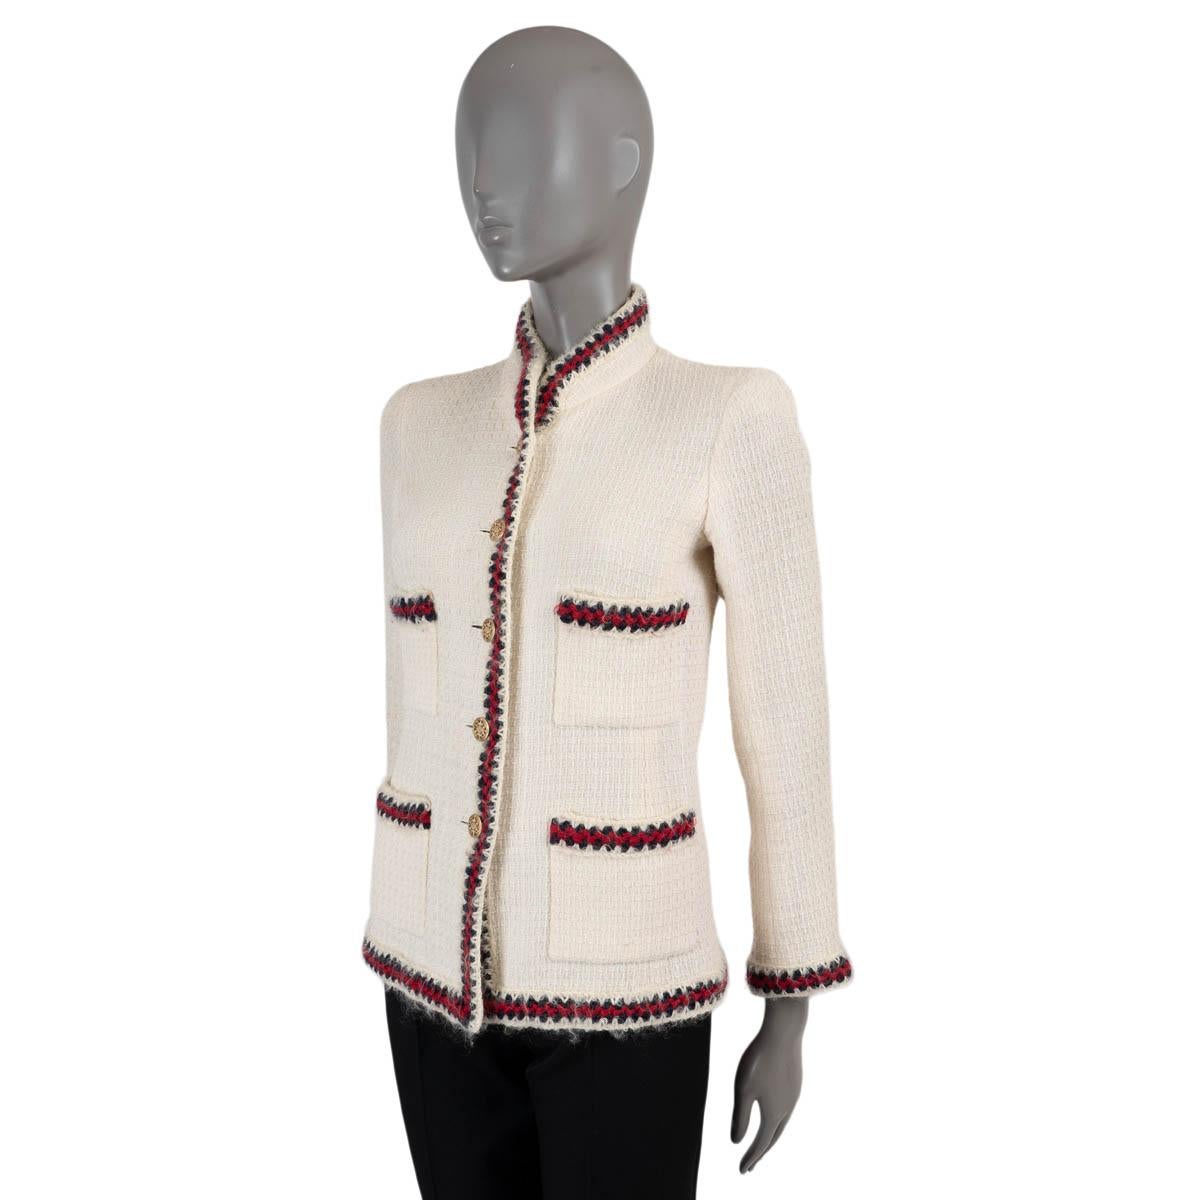 100% authentische Chanel Tweedjacke aus ecrufarbener Wolle (100%). Mit rotem und dunkelblauem Häkelbesatz, Stehkragen und vier Taschen auf der Vorderseite. Wird mit goldfarbenen Knöpfen auf der Vorderseite geschlossen und ist mit Seide (mit 14%